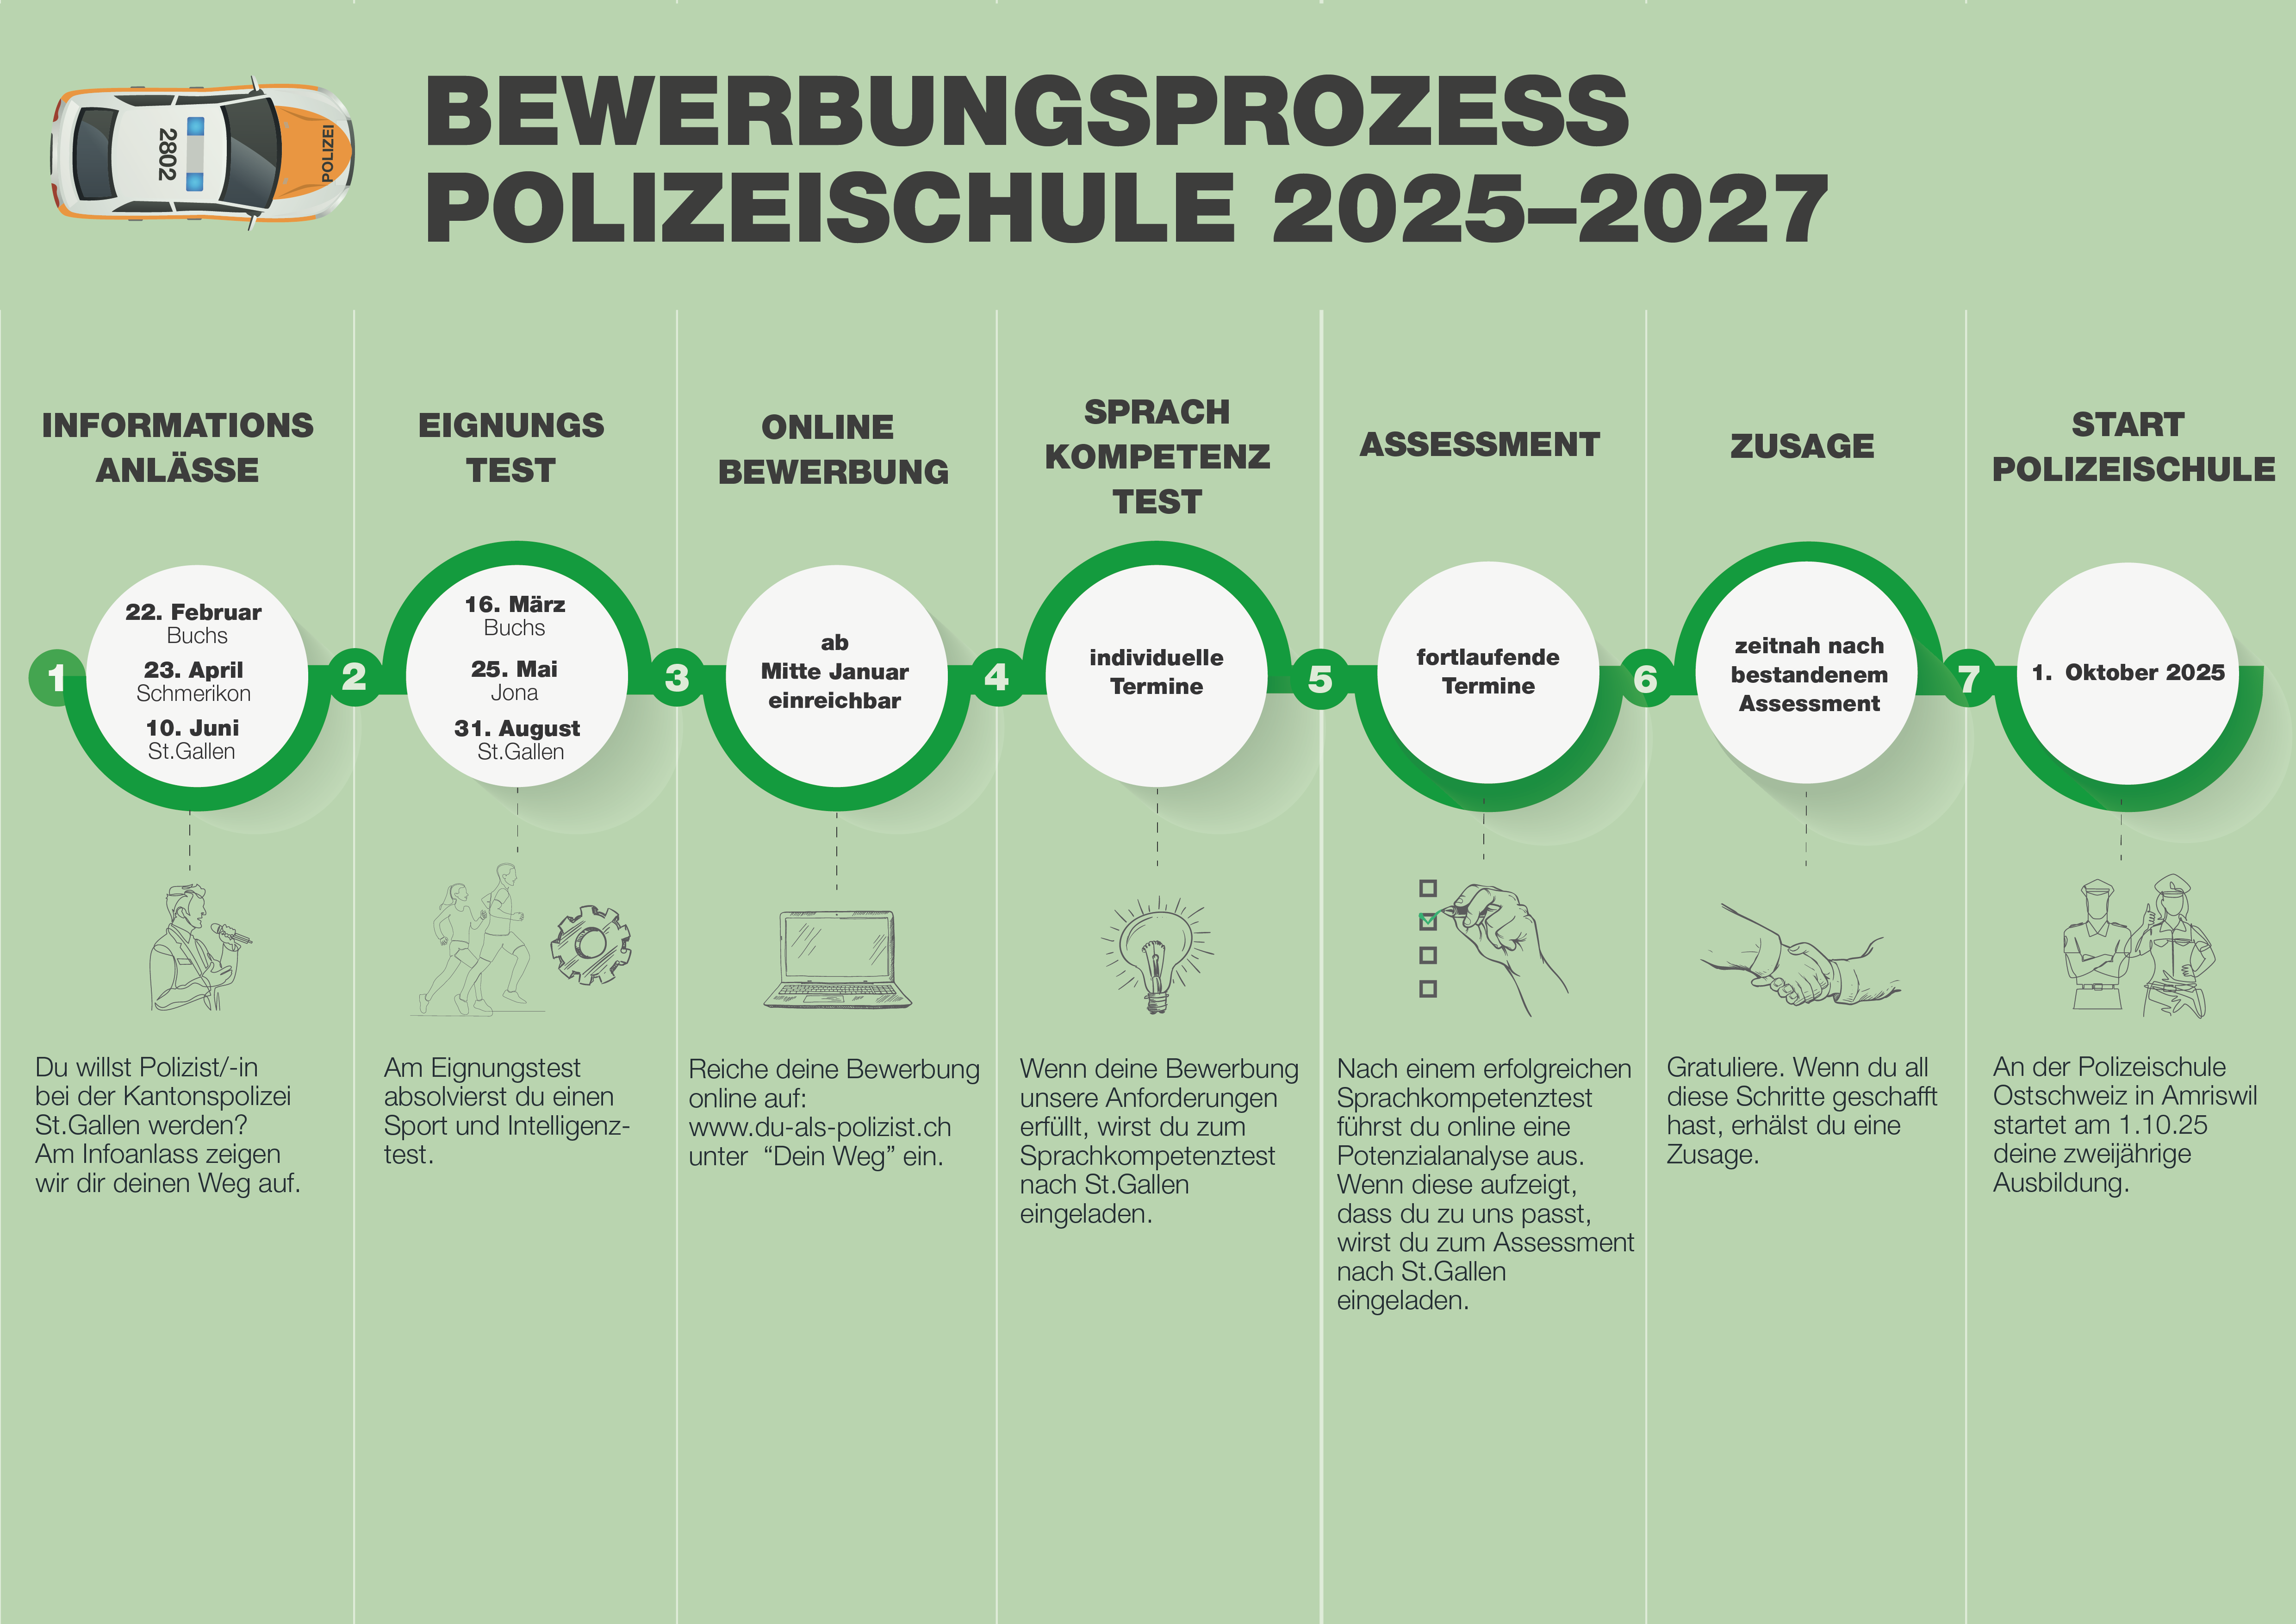 Bewerbungsprozess der Polizeischule 2025-2027 der Kantonspolizei St.Gallen